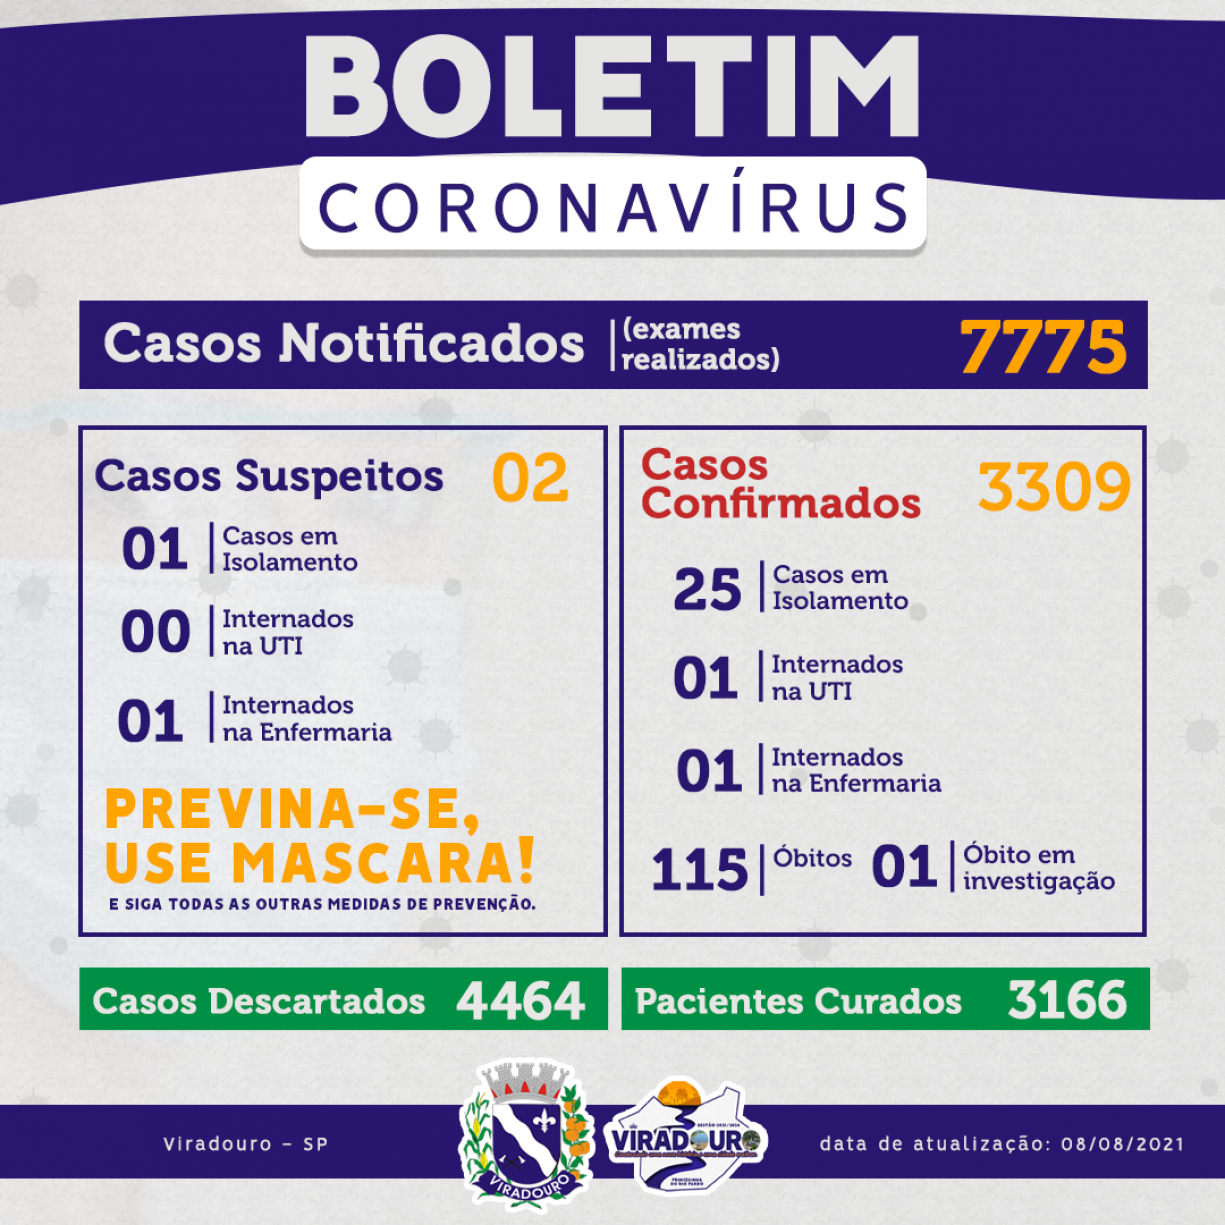 CORONAVÍRUS: BOLETIM EPIDEMIOLÓGICO (ATUALIZAÇÃO 08/08/2021)